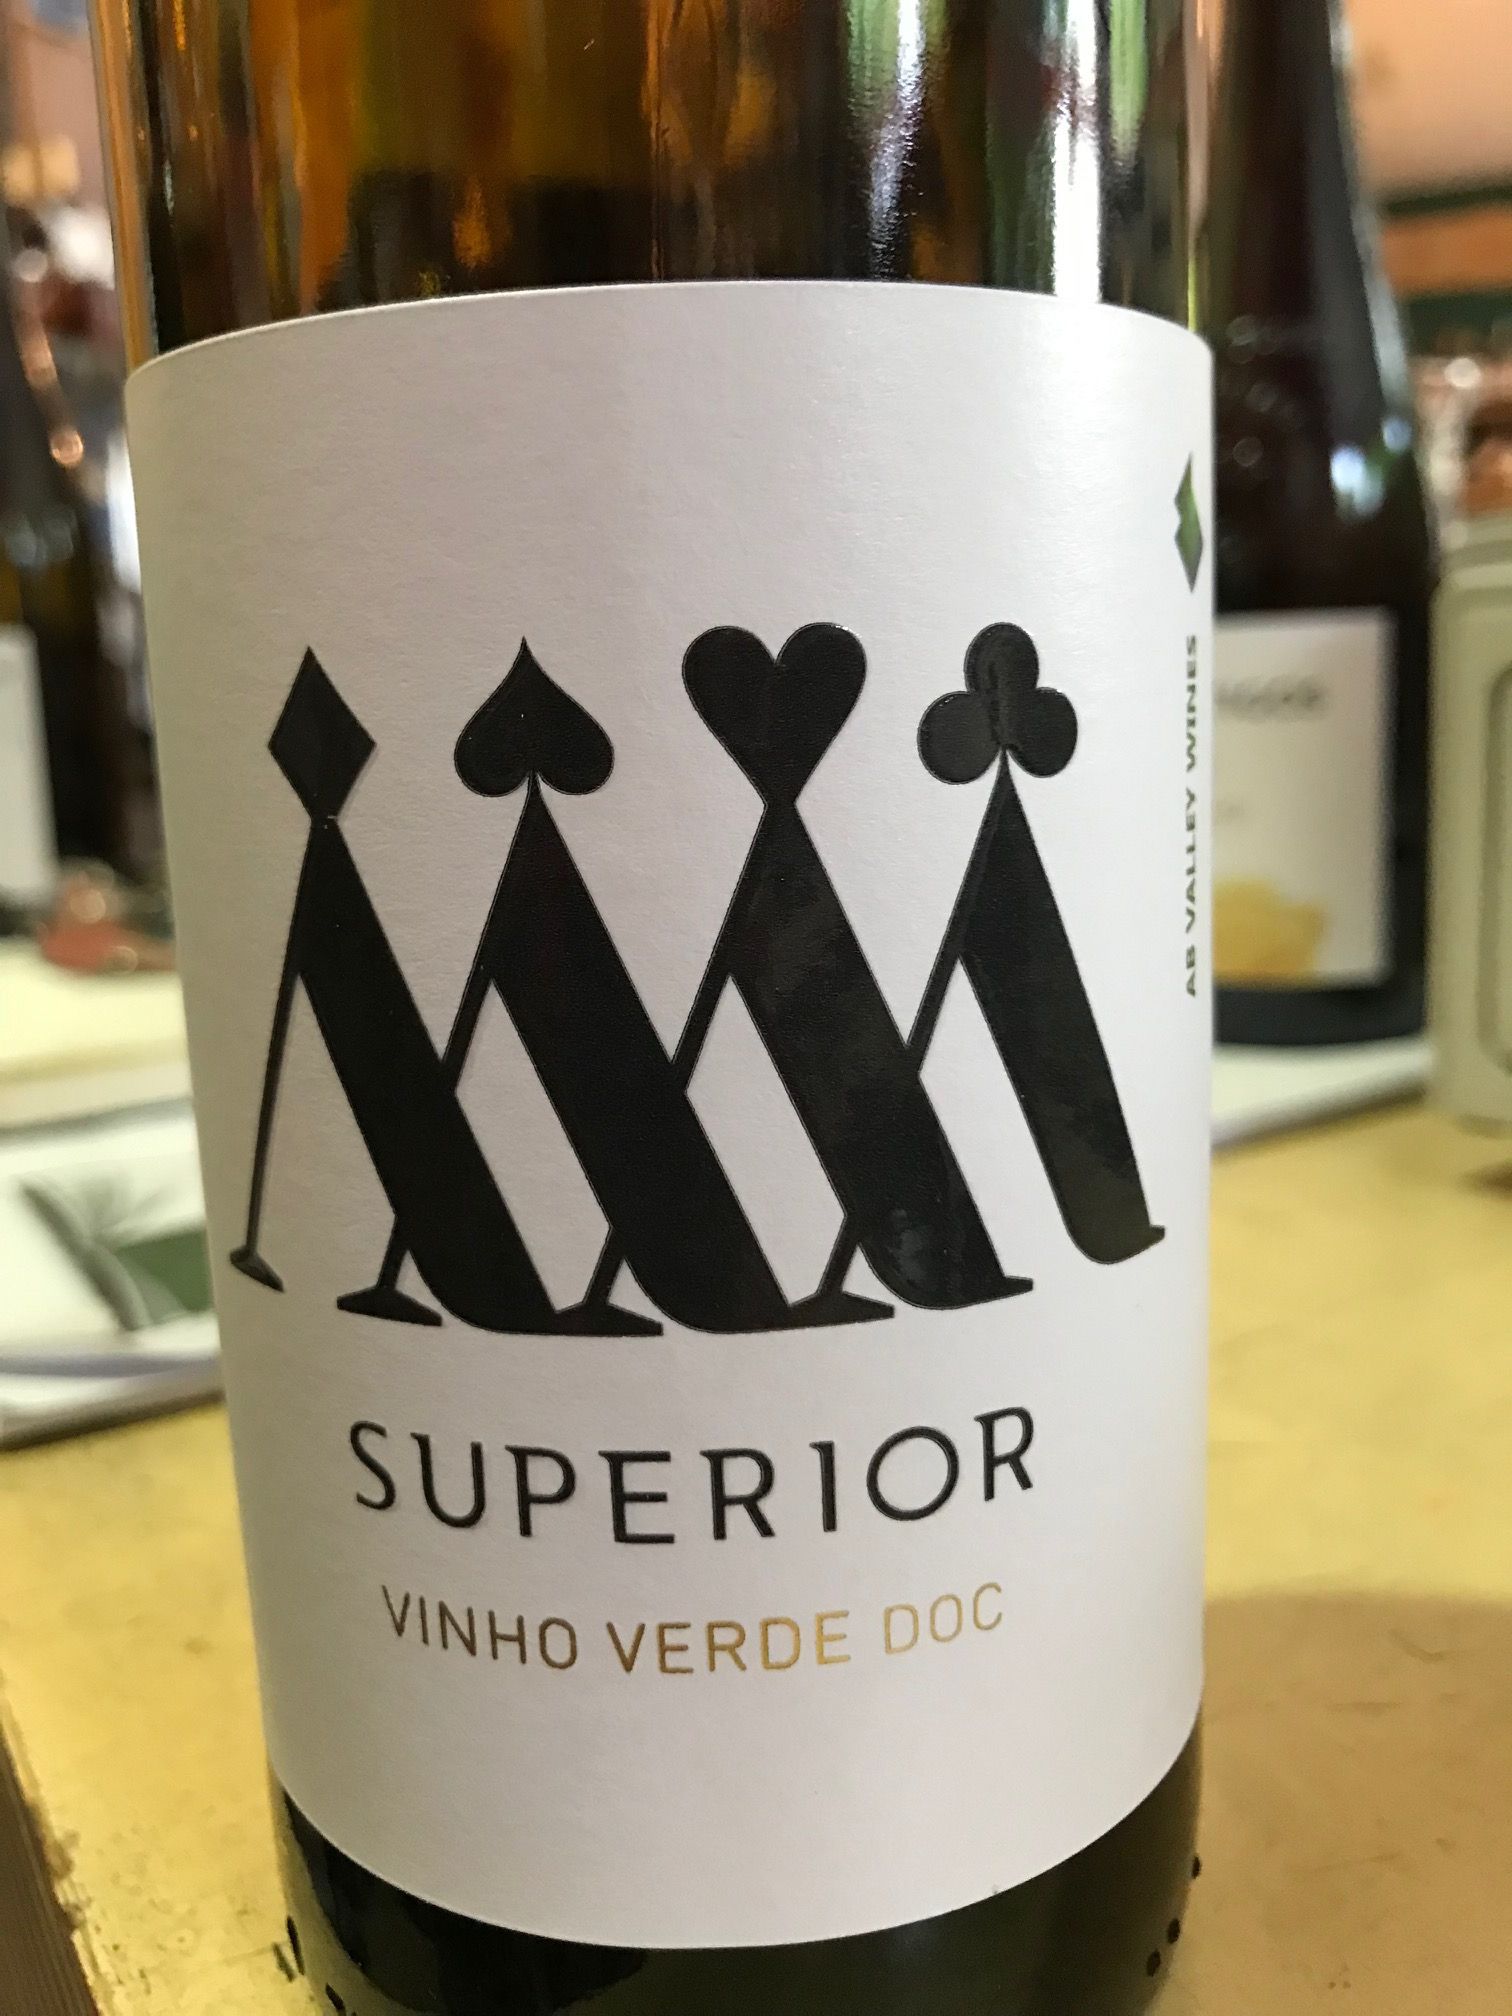 Portugal Probierpaket | 6 Vinho | Weissweinpakete O Sparpreis Weissweine Probierpakete